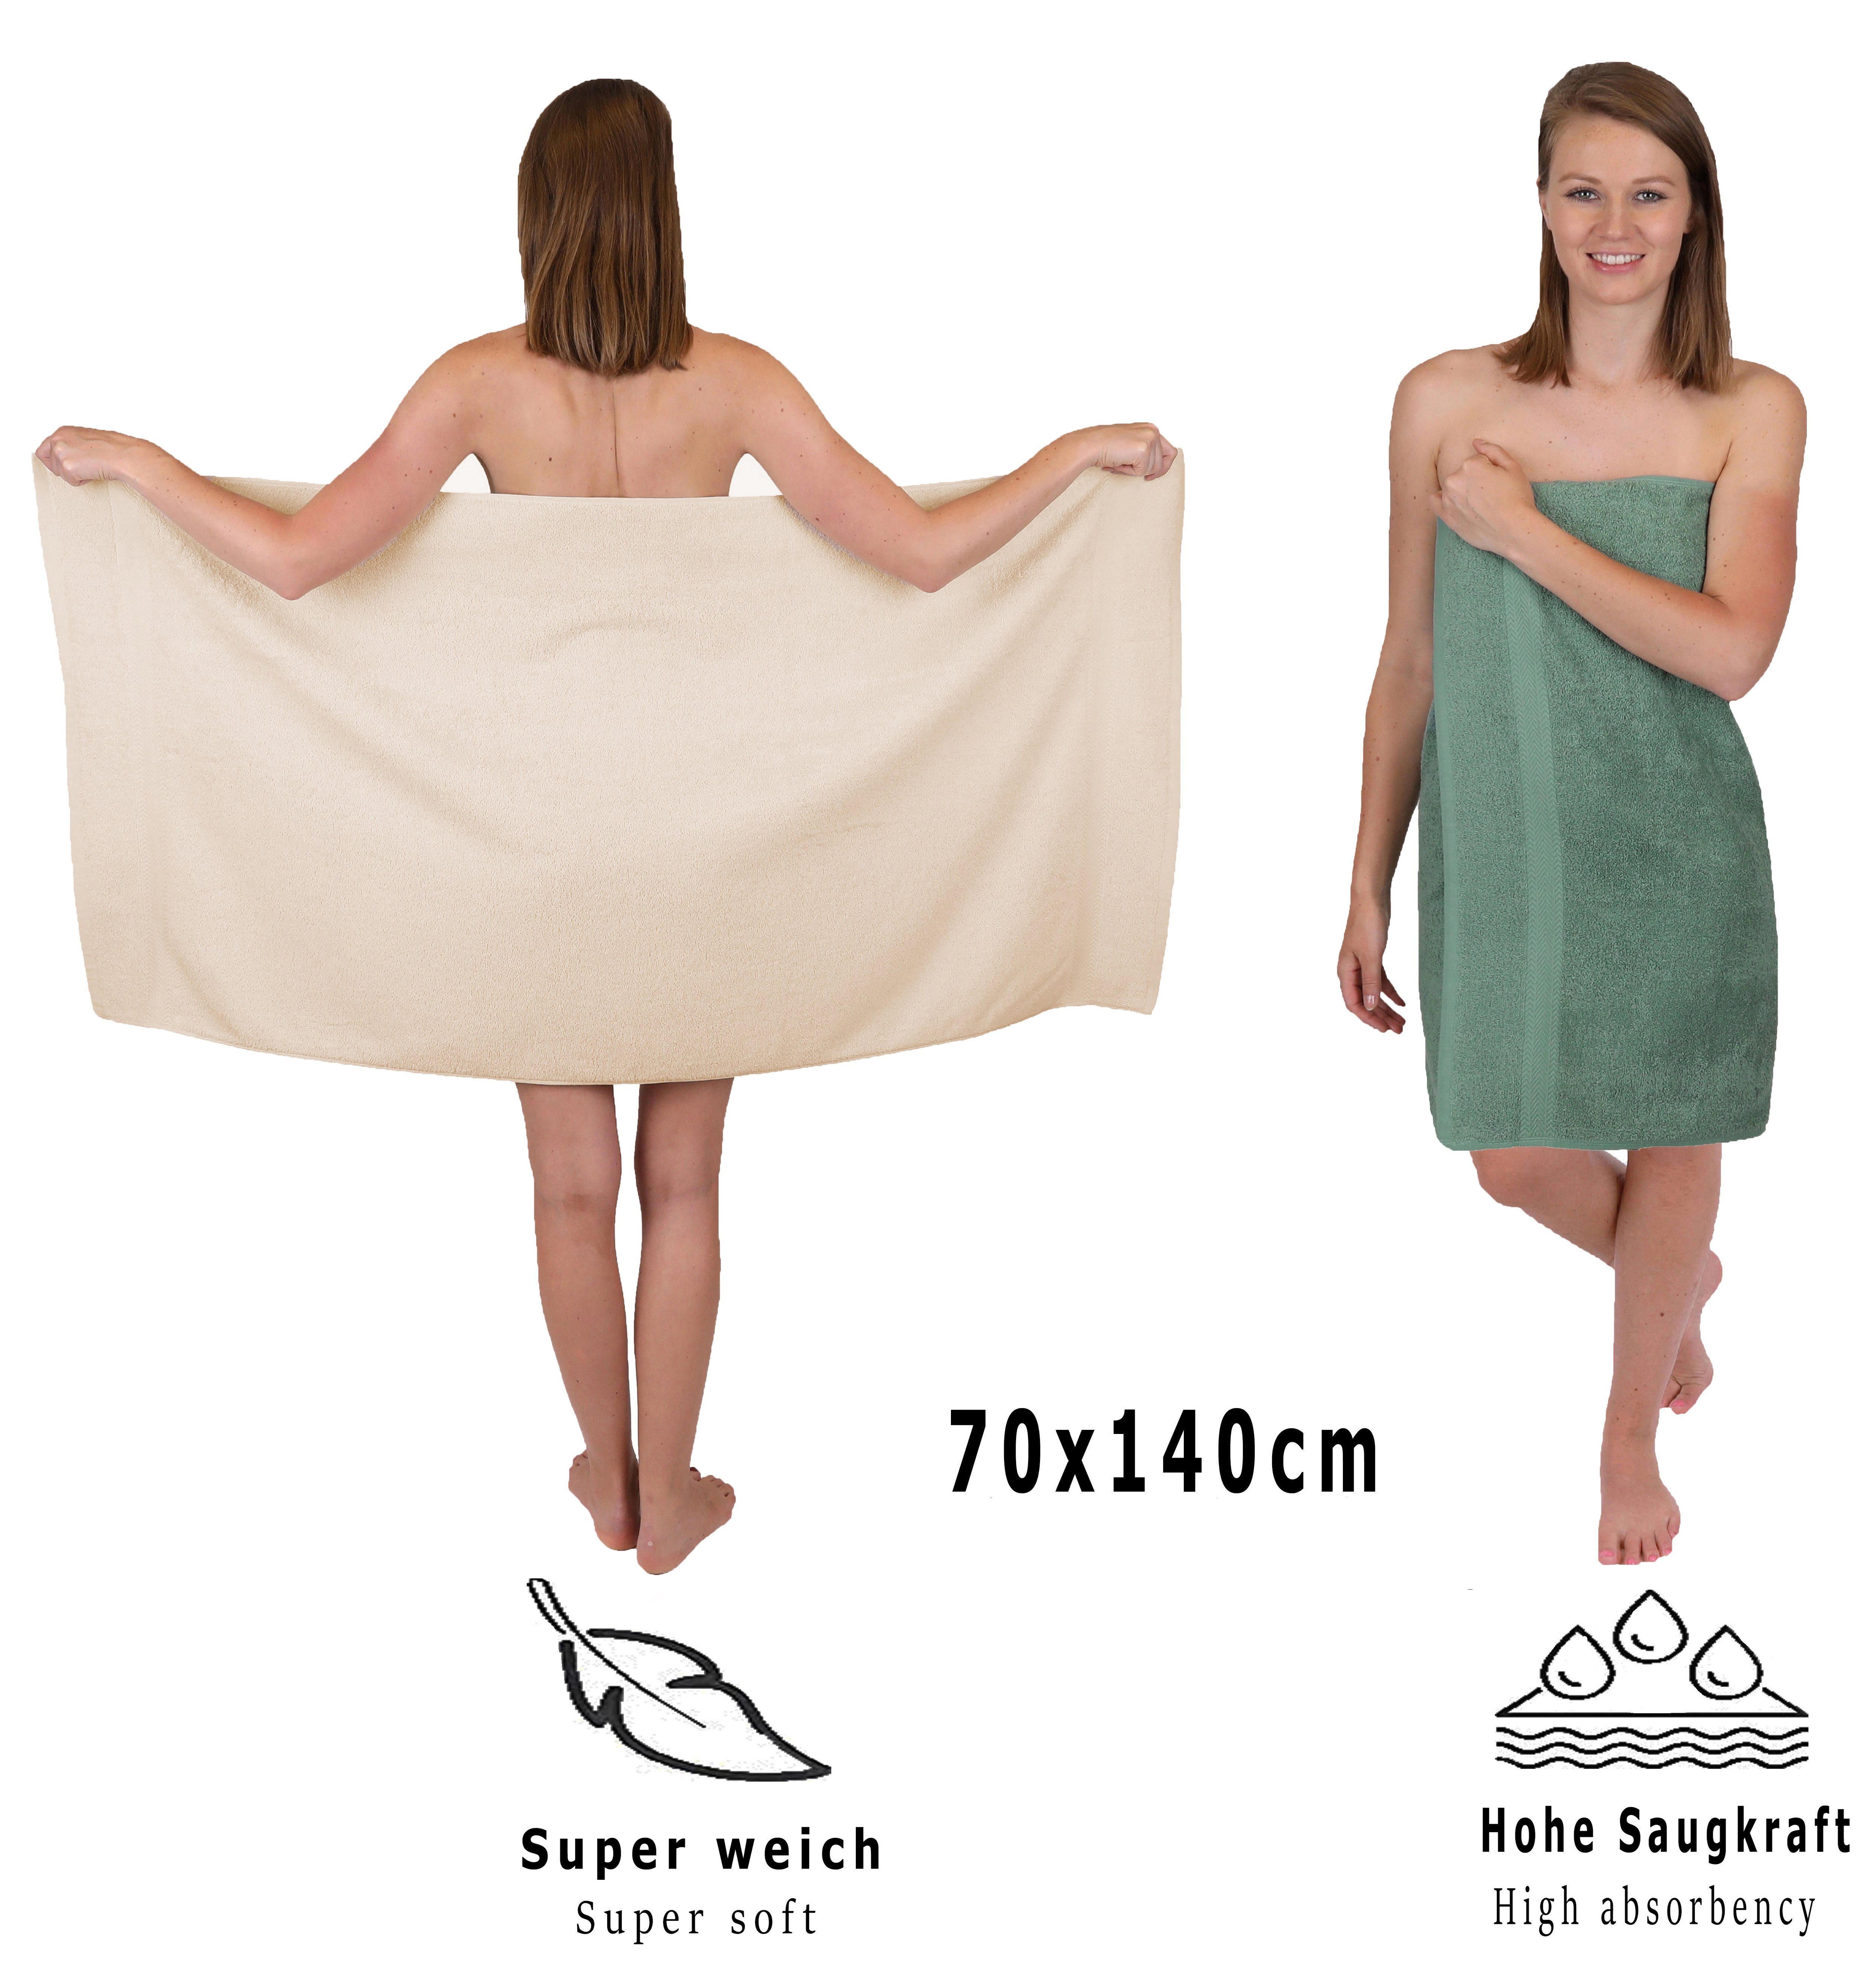 Betz Handtuch Set Farbe (12-tlg) Sand/tannengrün, 12-TLG. Baumwolle, 100% Handtuch Set Premium